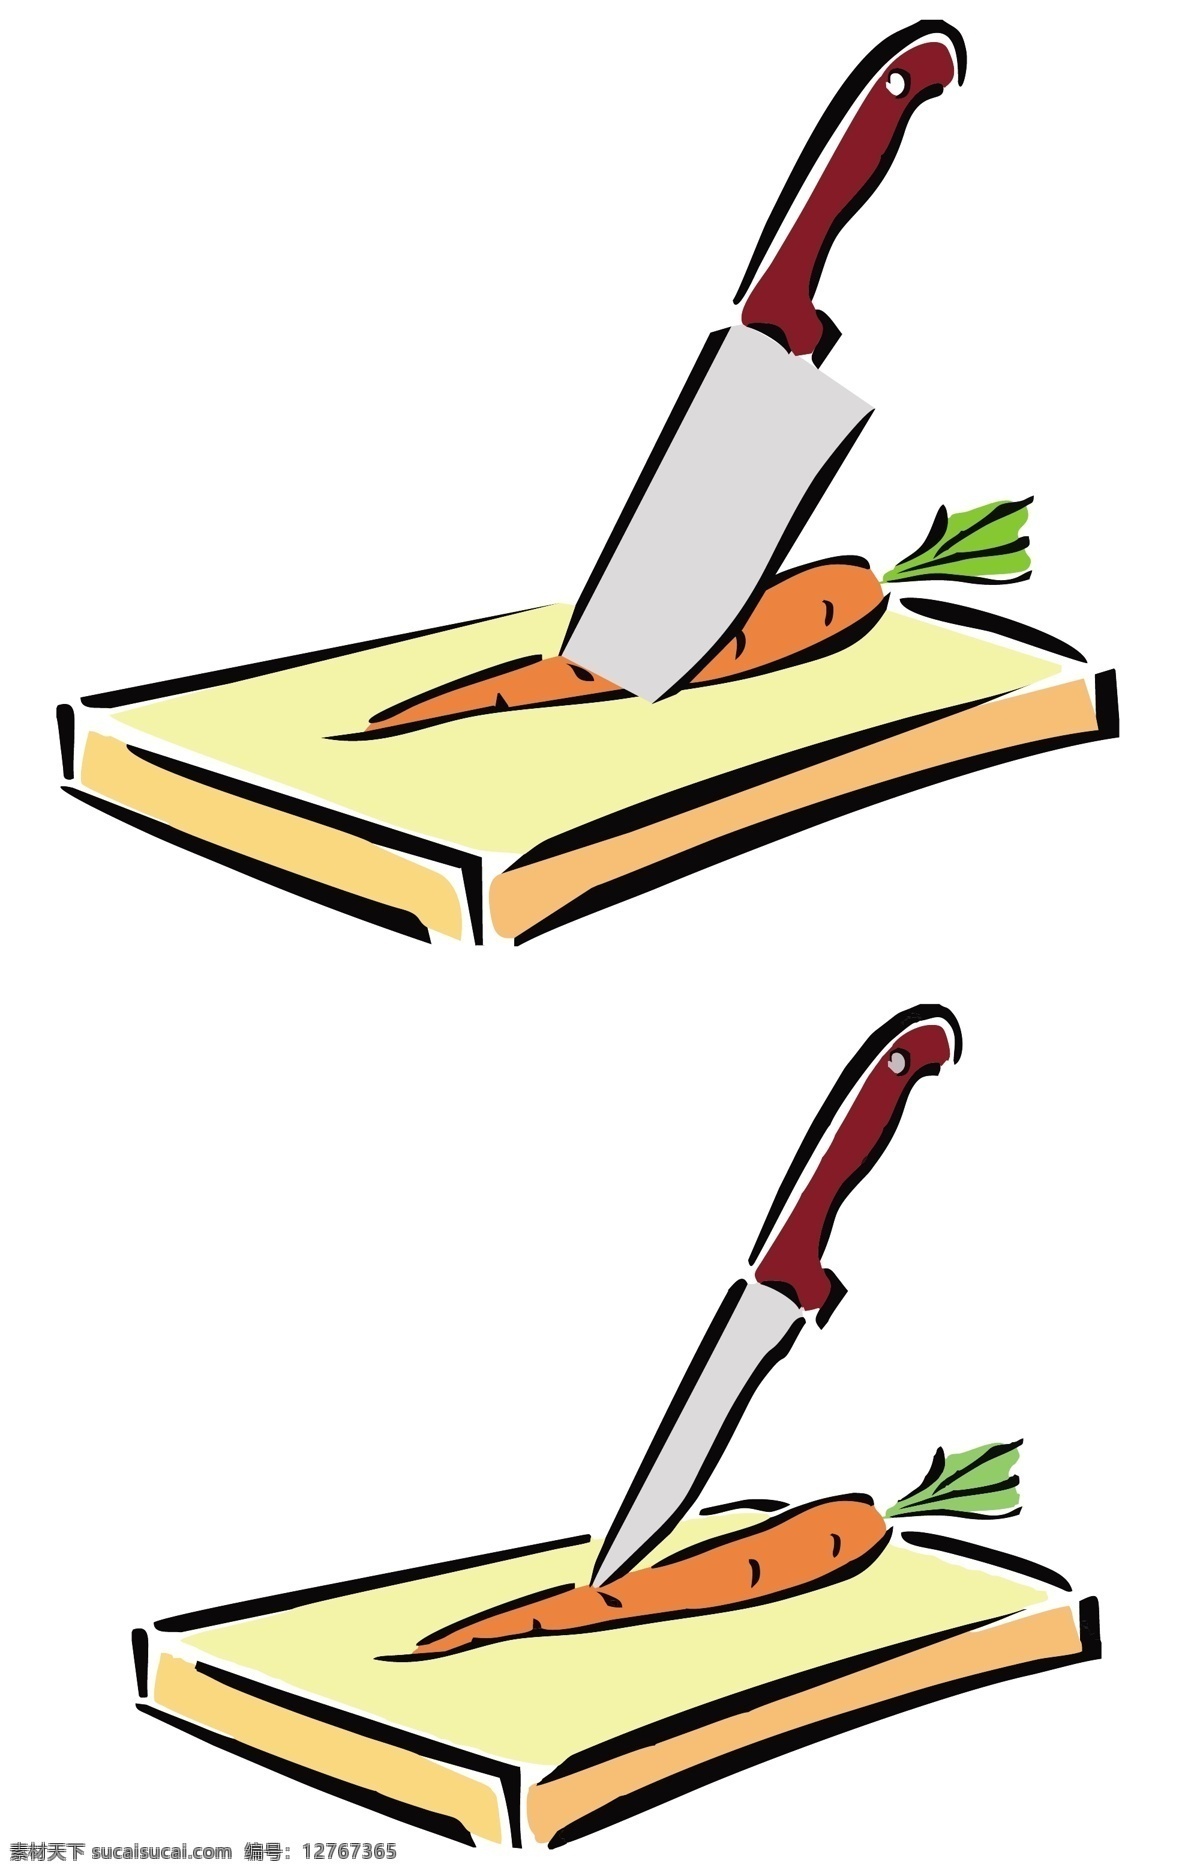 卡通菜刀菜板 线条画菜刀 菜板 大刀和小刀 切胡萝卜图片 上 胡萝卜 ai矢量图 白色